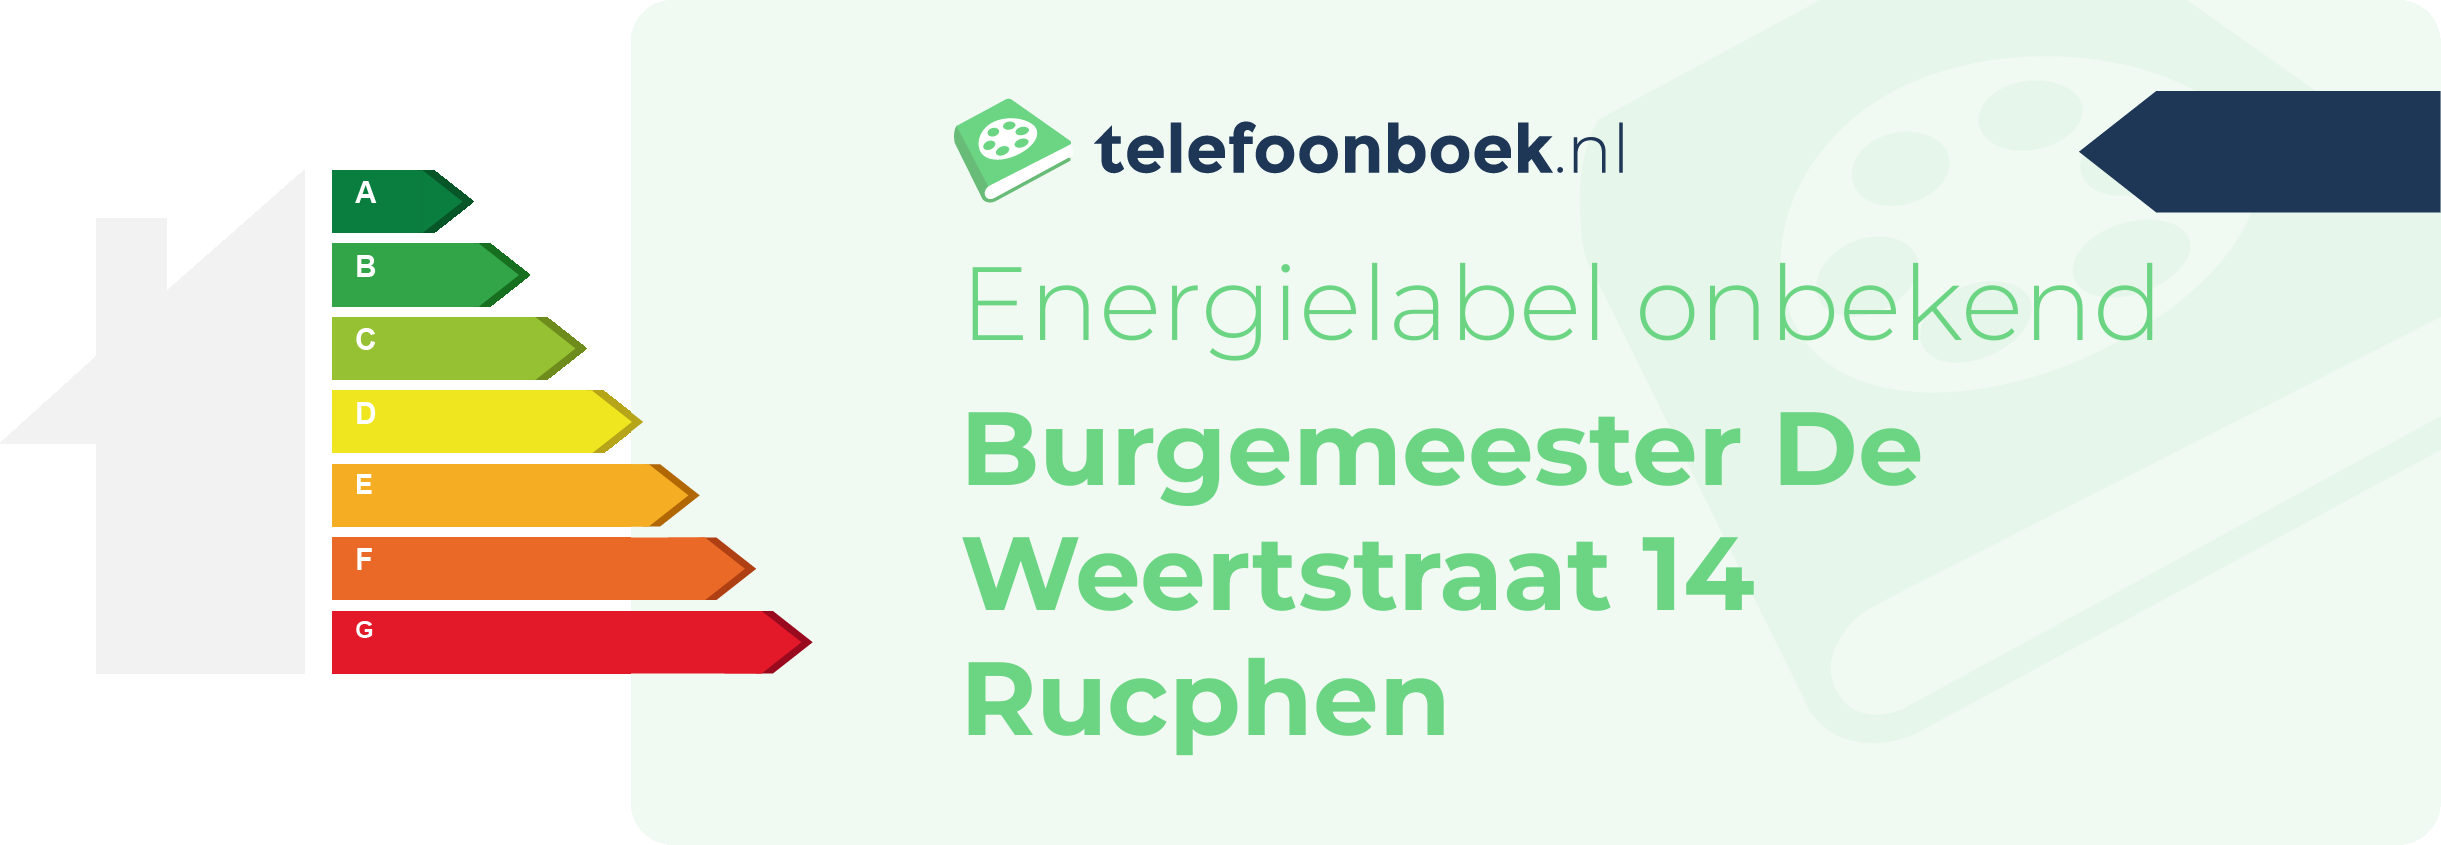 Energielabel Burgemeester De Weertstraat 14 Rucphen